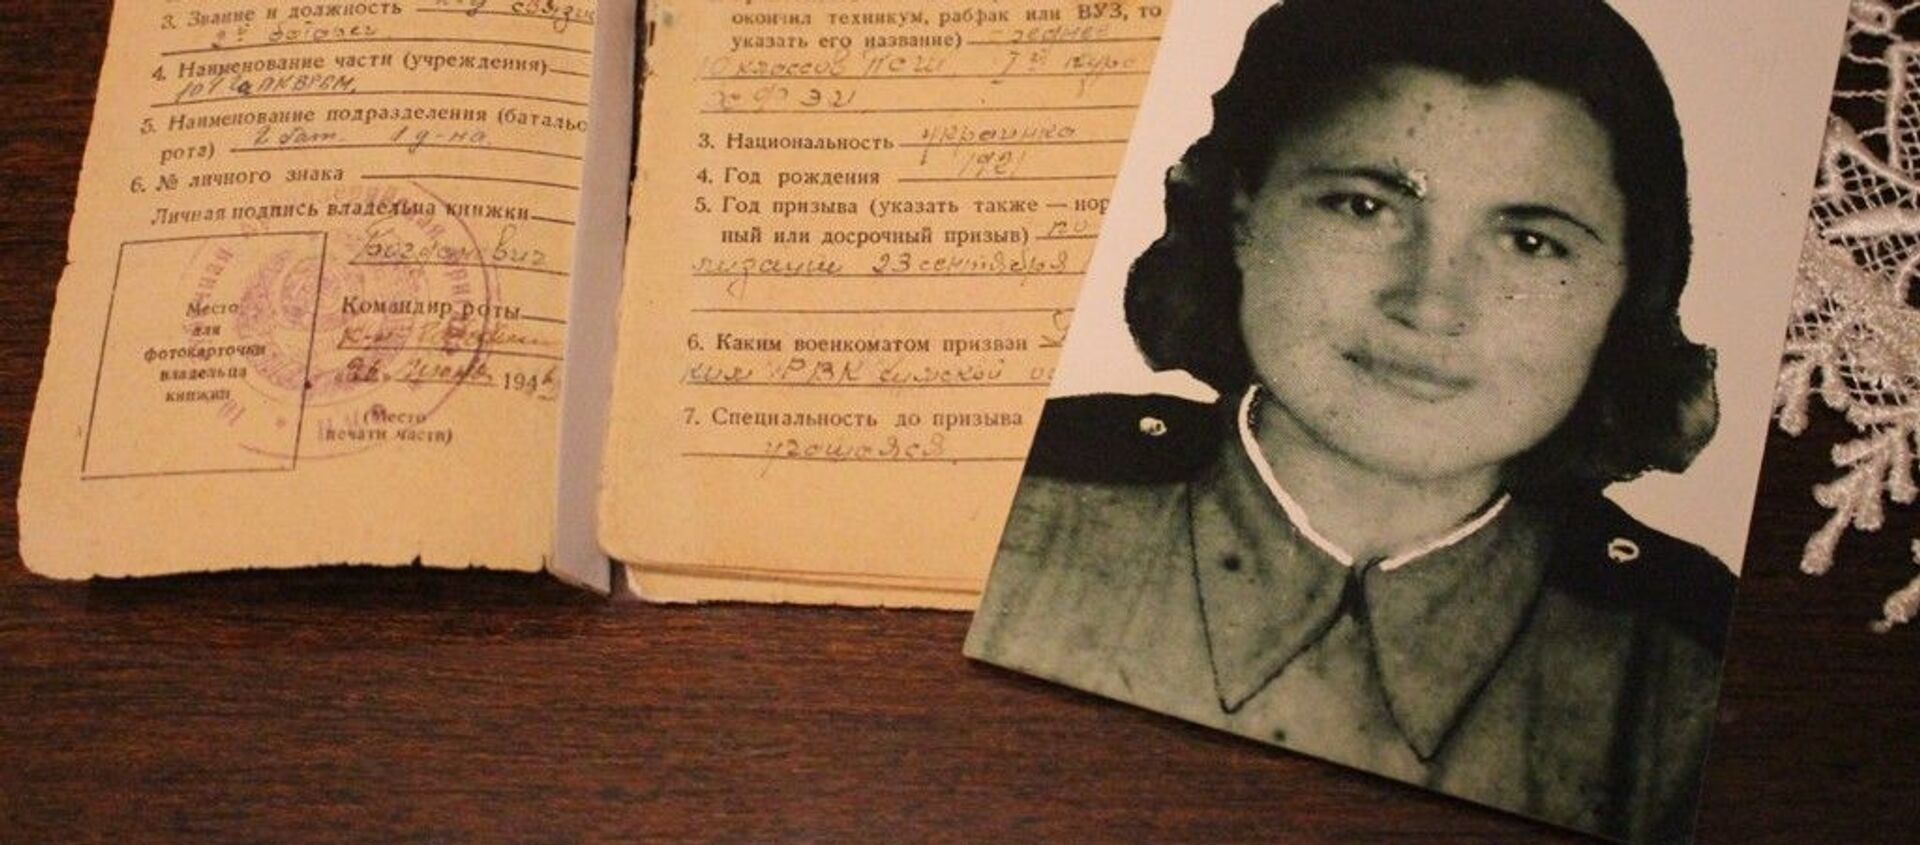  Антонина Ивановна Кабанихина стала телефонисткой в 21 год - Sputnik Беларусь, 1920, 22.06.2020